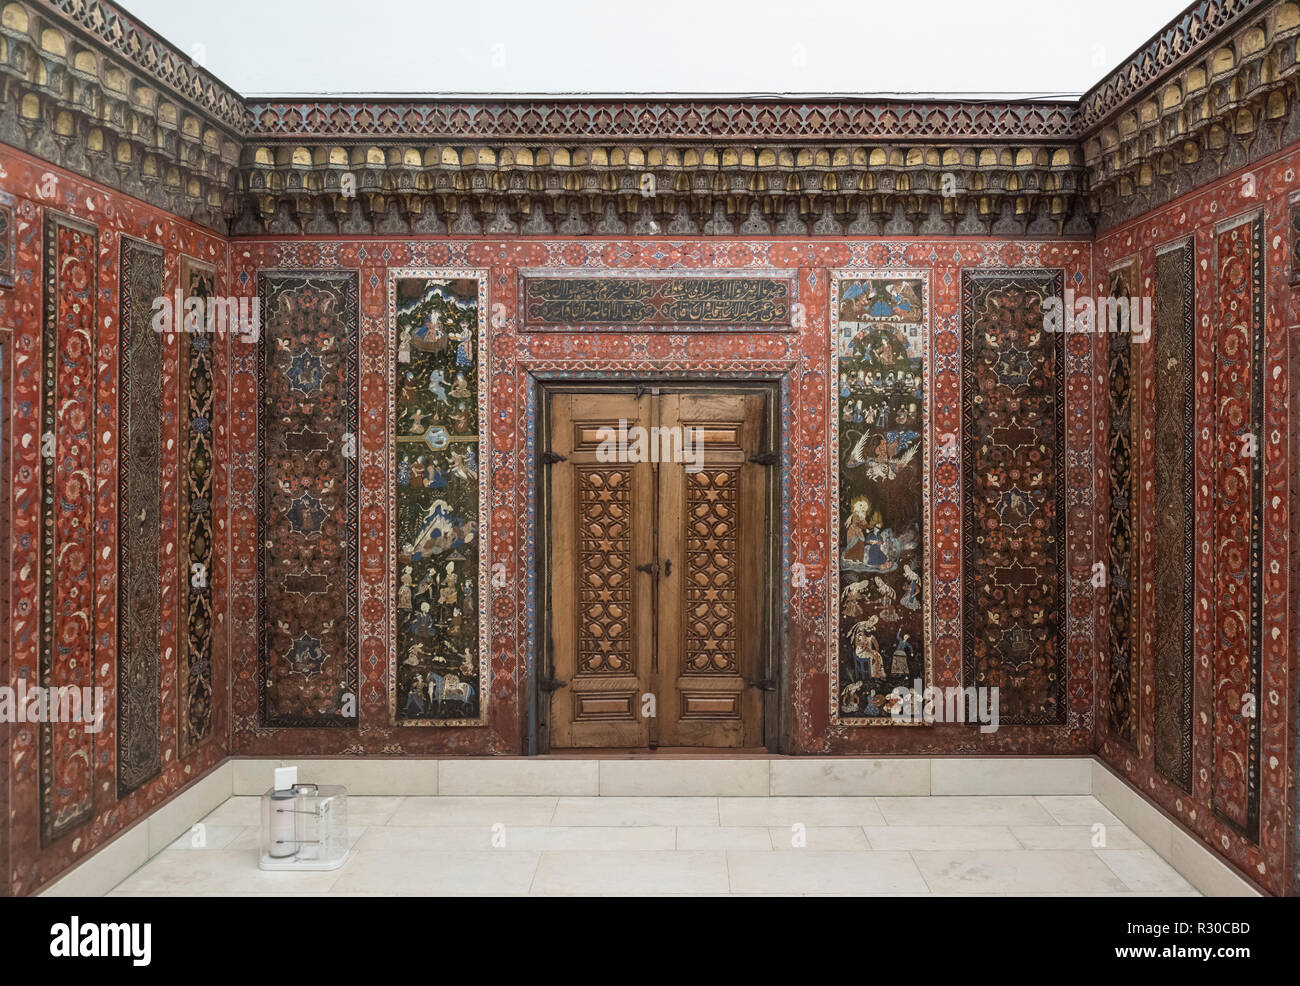 Berlino. Germania. Pergamon Museum. La camera di Aleppo è un allestita camera da la casa di un ricco commerciante di Aleppo in Siria realizzato tra il 1600 un Foto Stock